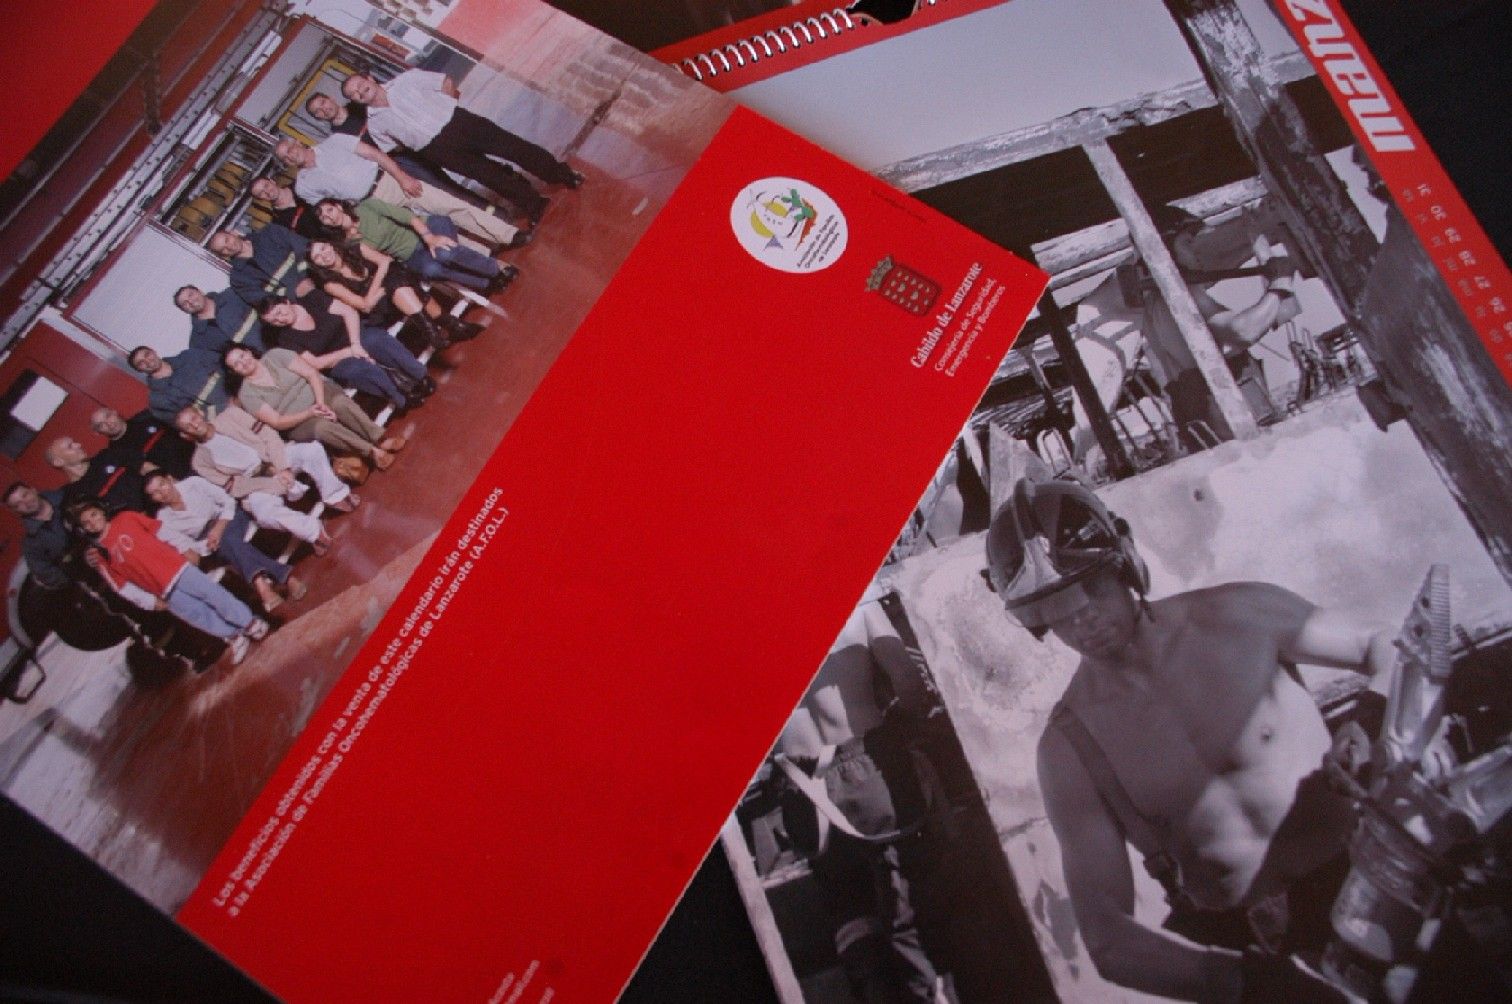 Sale a la venta el calendario solidario 2007 de los bomberos de Lanzarote